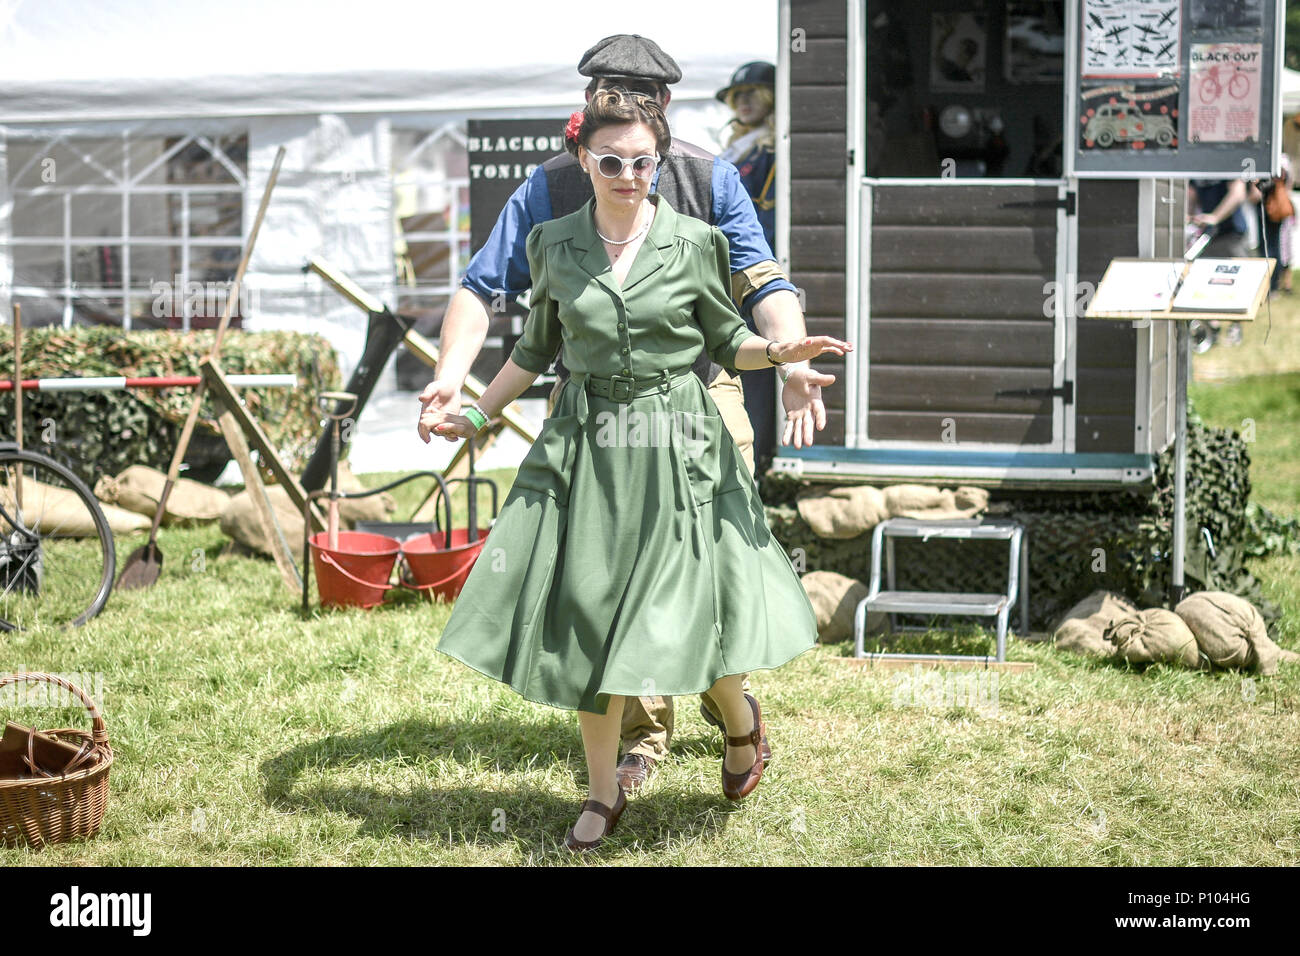 Die Menschen gekleidet in 1940 Zeitraum kostüm Tanz an der Dig für Sieg zeigen, ein Festival, das in den 40er Jahren feiert, am North Somerset, Wraxall, Somerset. Stockfoto